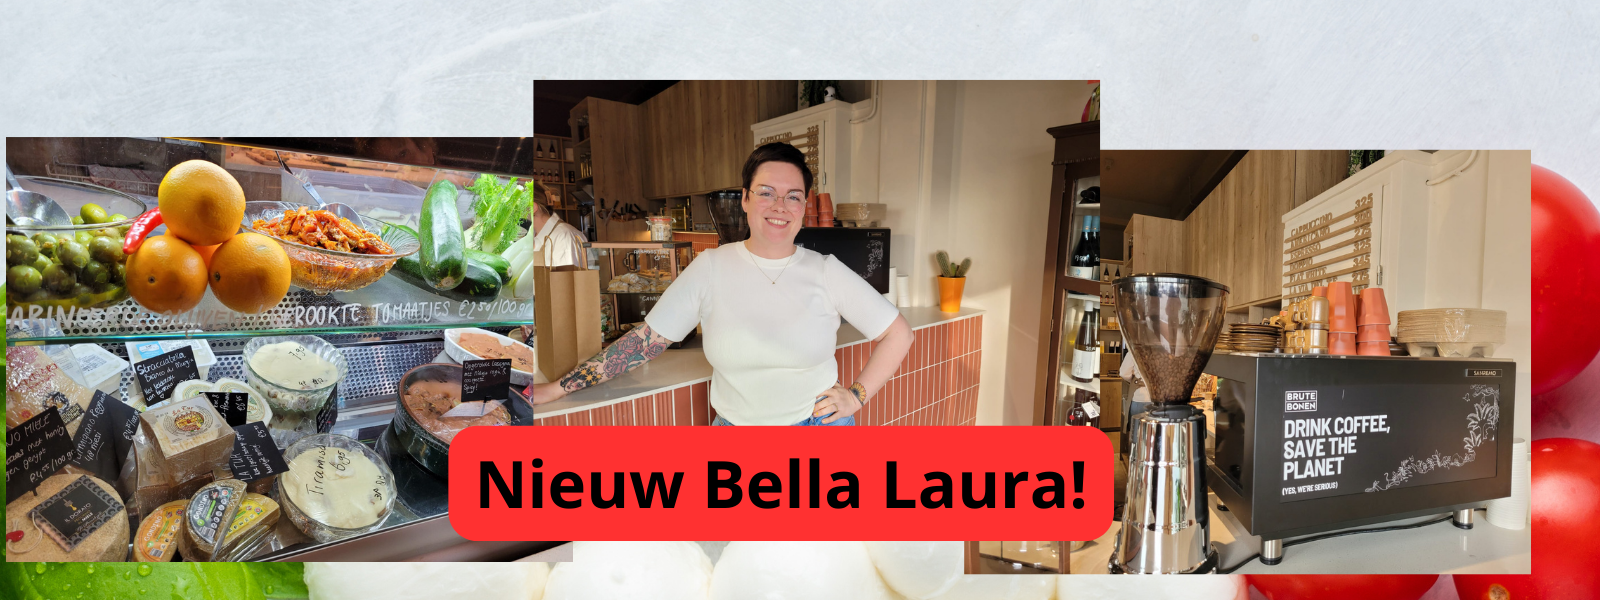 Nieuw Bella Laura